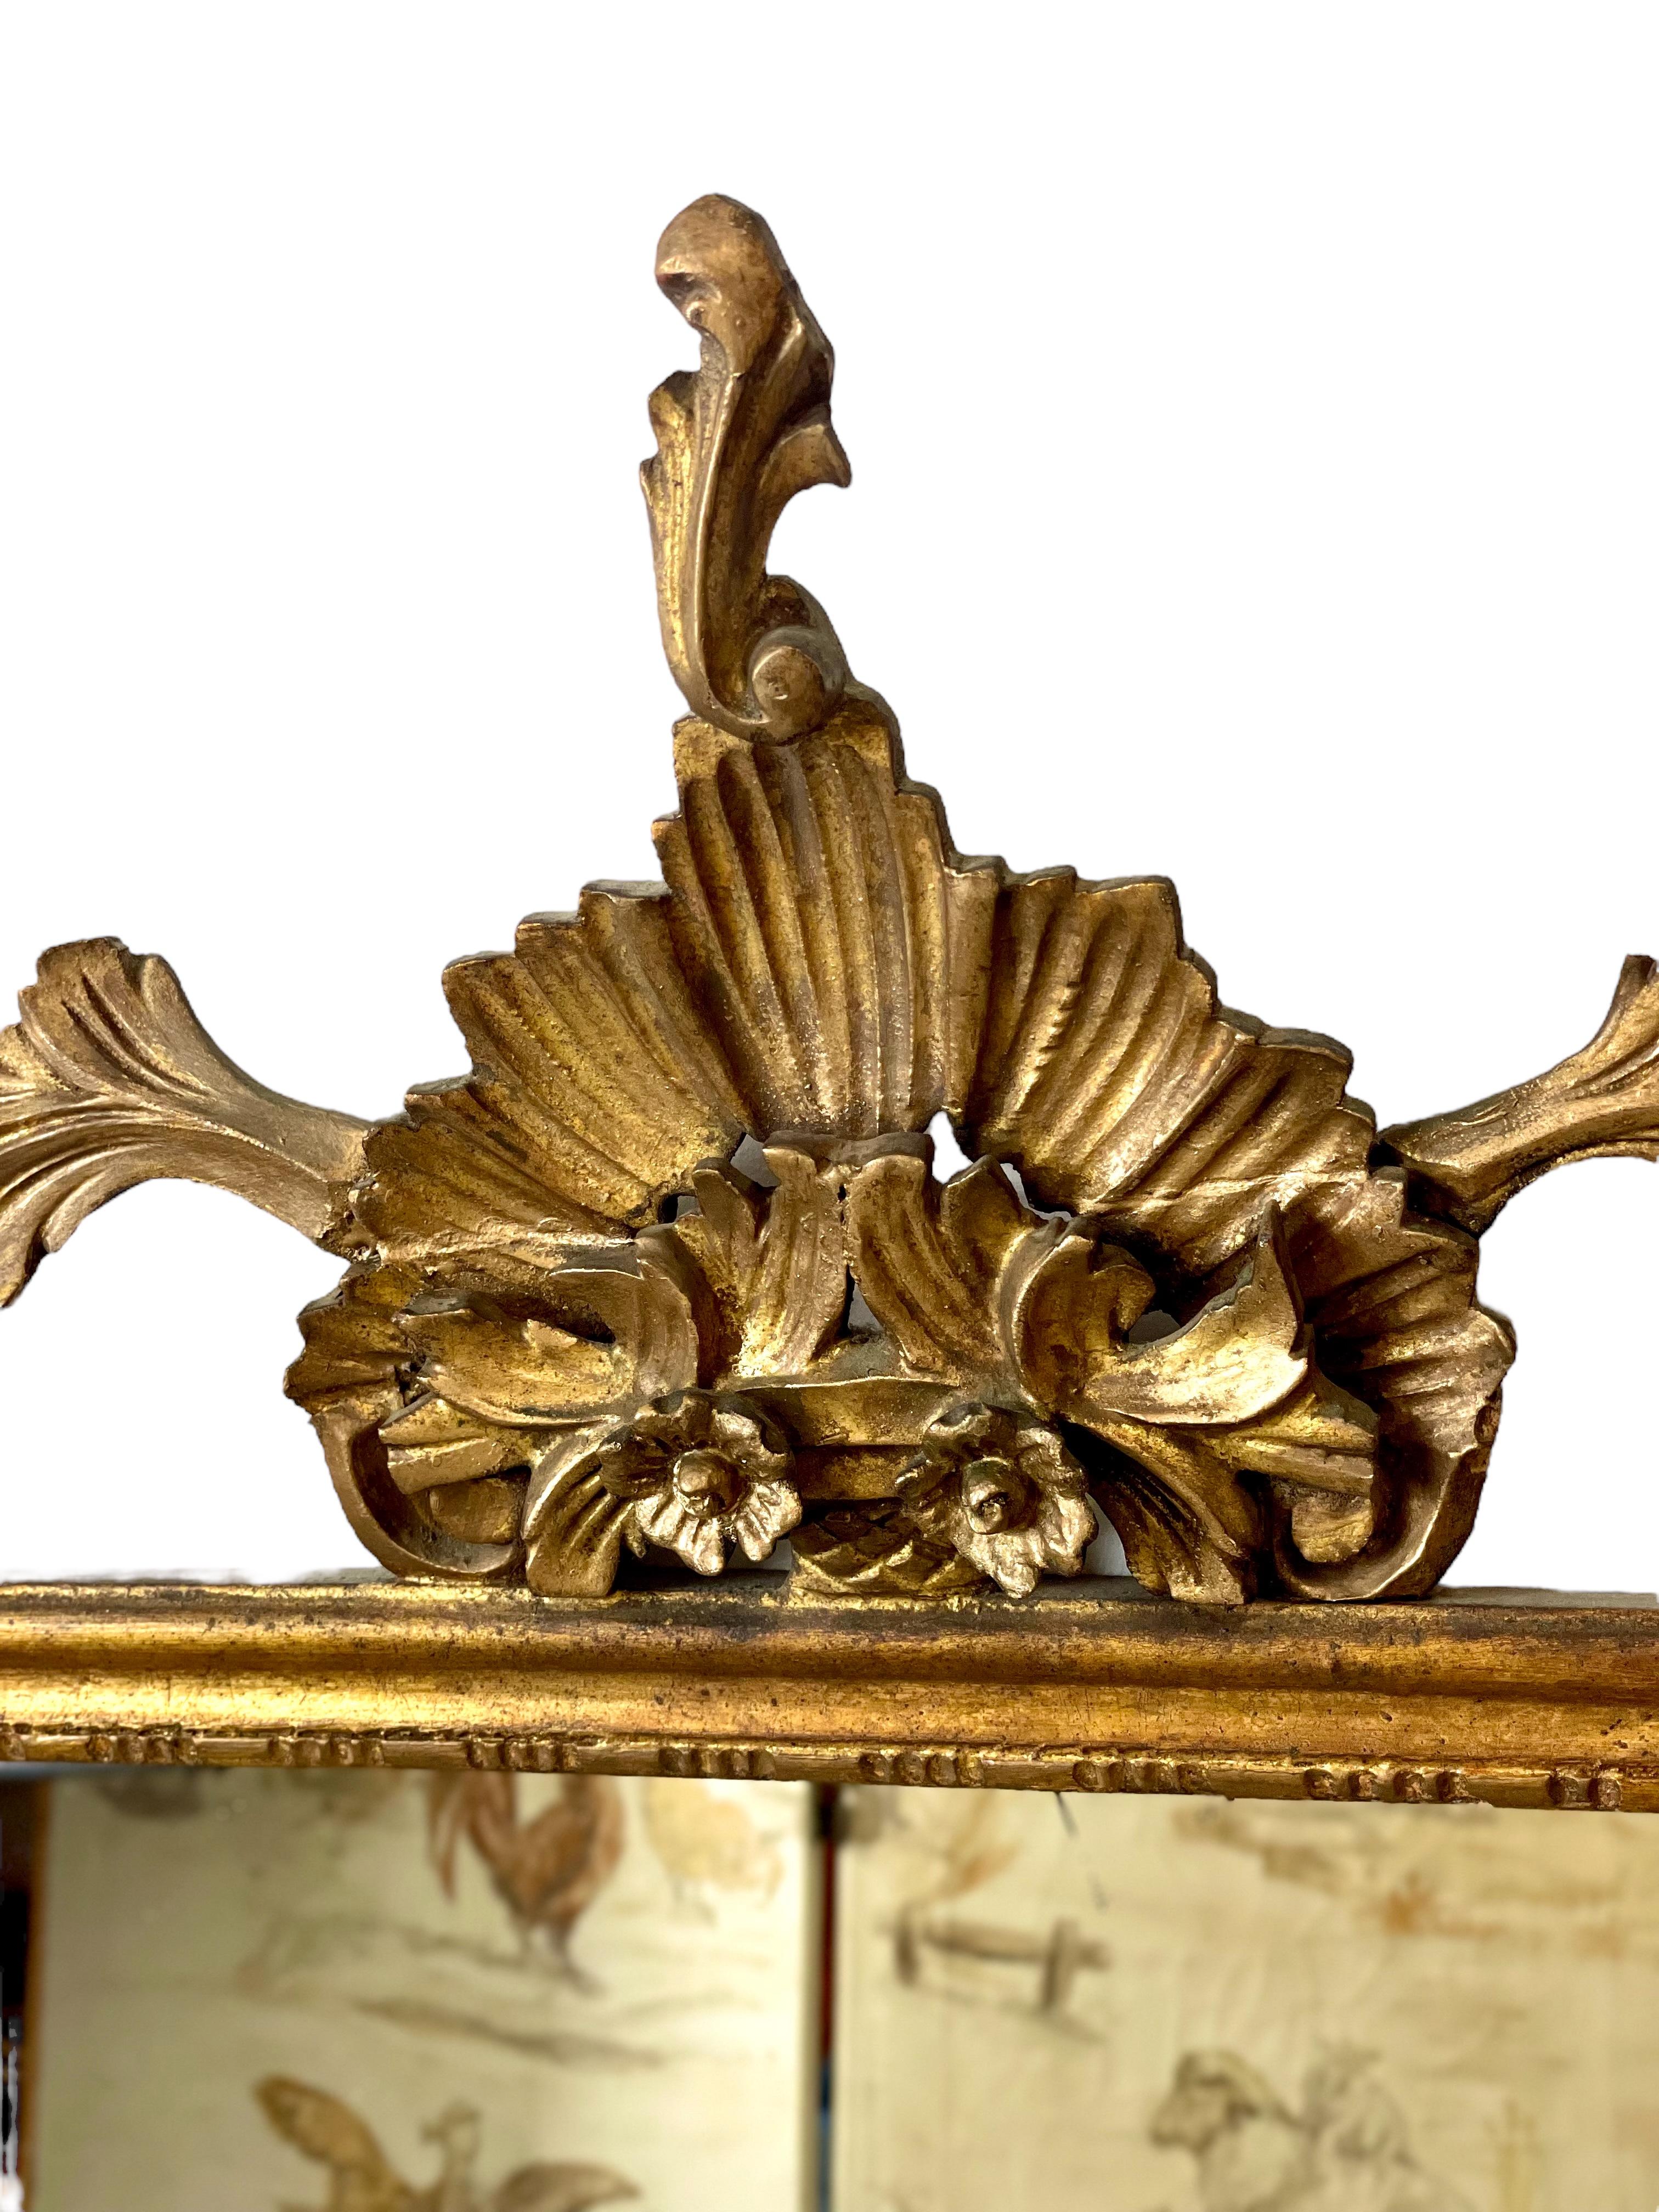 Ein sehr schöner Mantelspiegel aus vergoldetem Holz und Stuck aus dem 19. Die rechteckige Spiegelplatte befindet sich in einem schmalen vergoldeten Rahmen, der von einer überdimensionalen und verzierten Kartuschenkrone gekrönt wird. Über beide